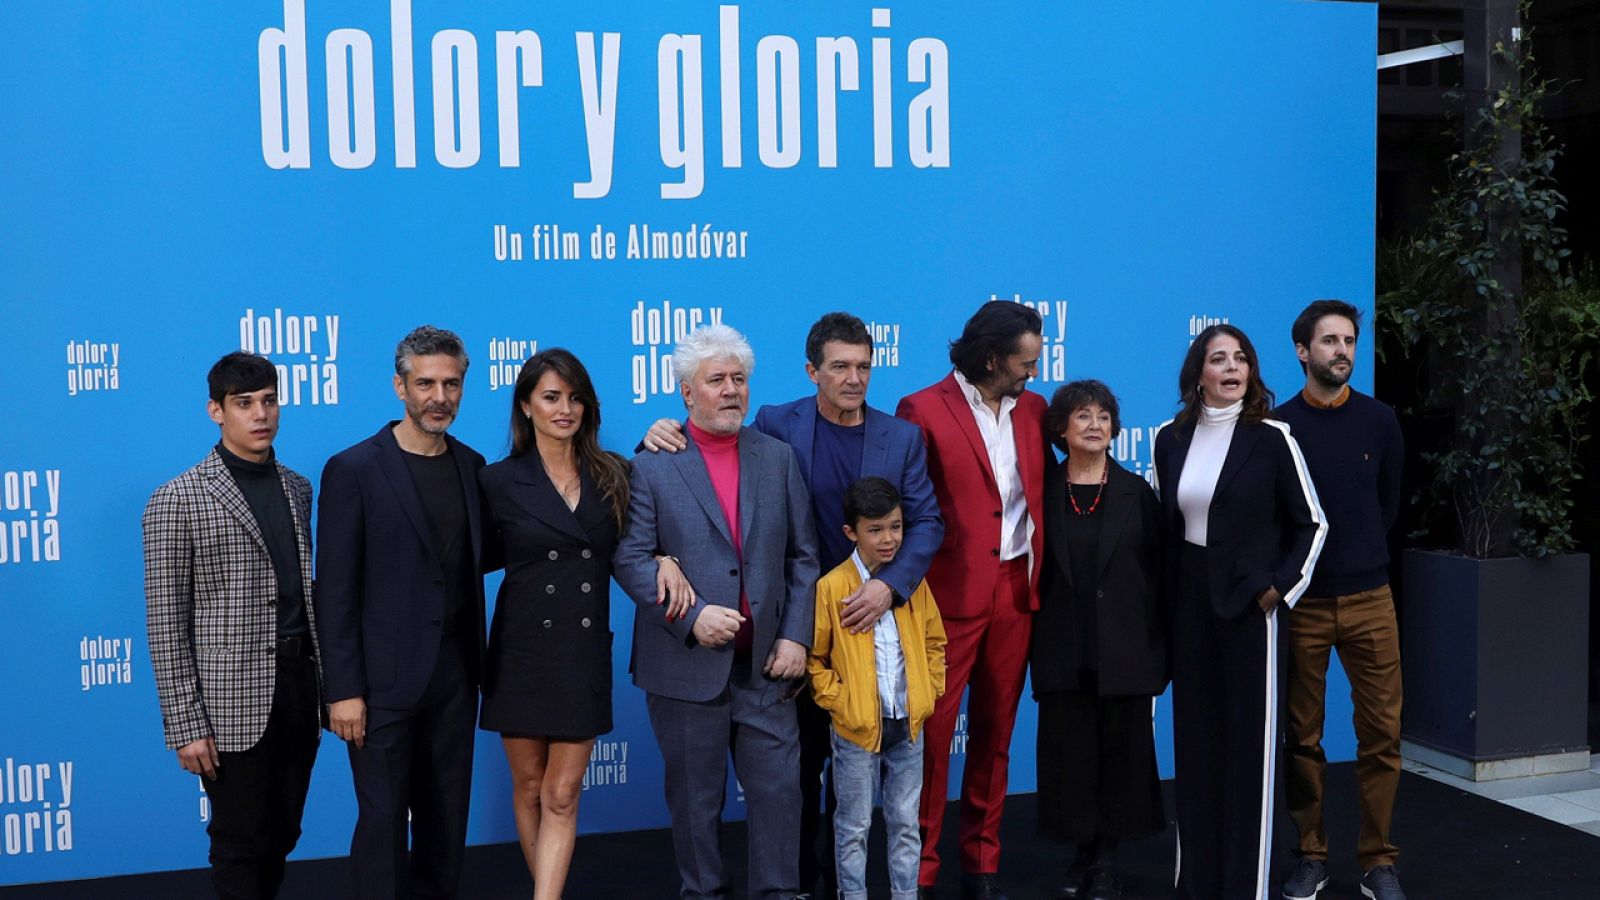 La revista 'Time' nombra 'Dolor y gloria' como la mejor película de 2019